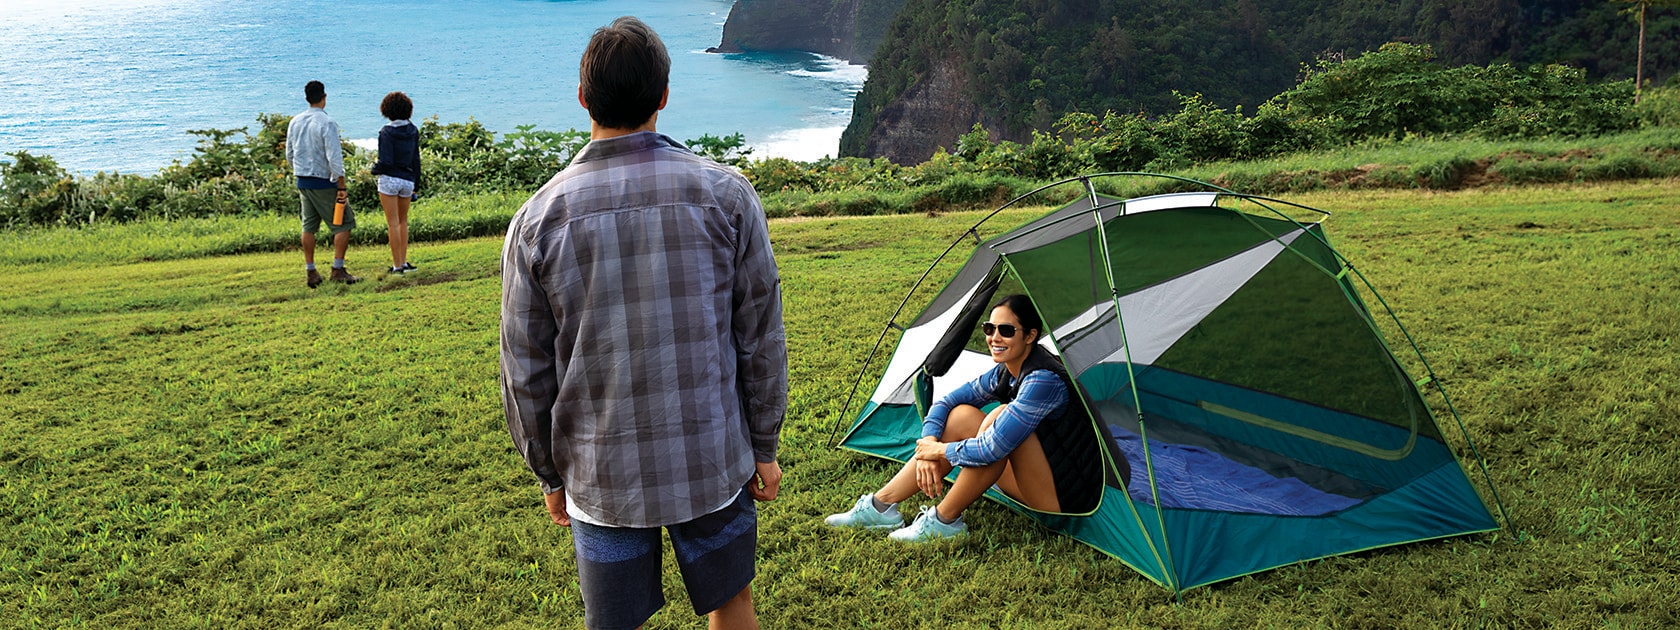 uomo e donna seduti uno accanto all'altra dentro ad una tenda su una collina erbosa prospiciente una scogliera a picco sull'oceano